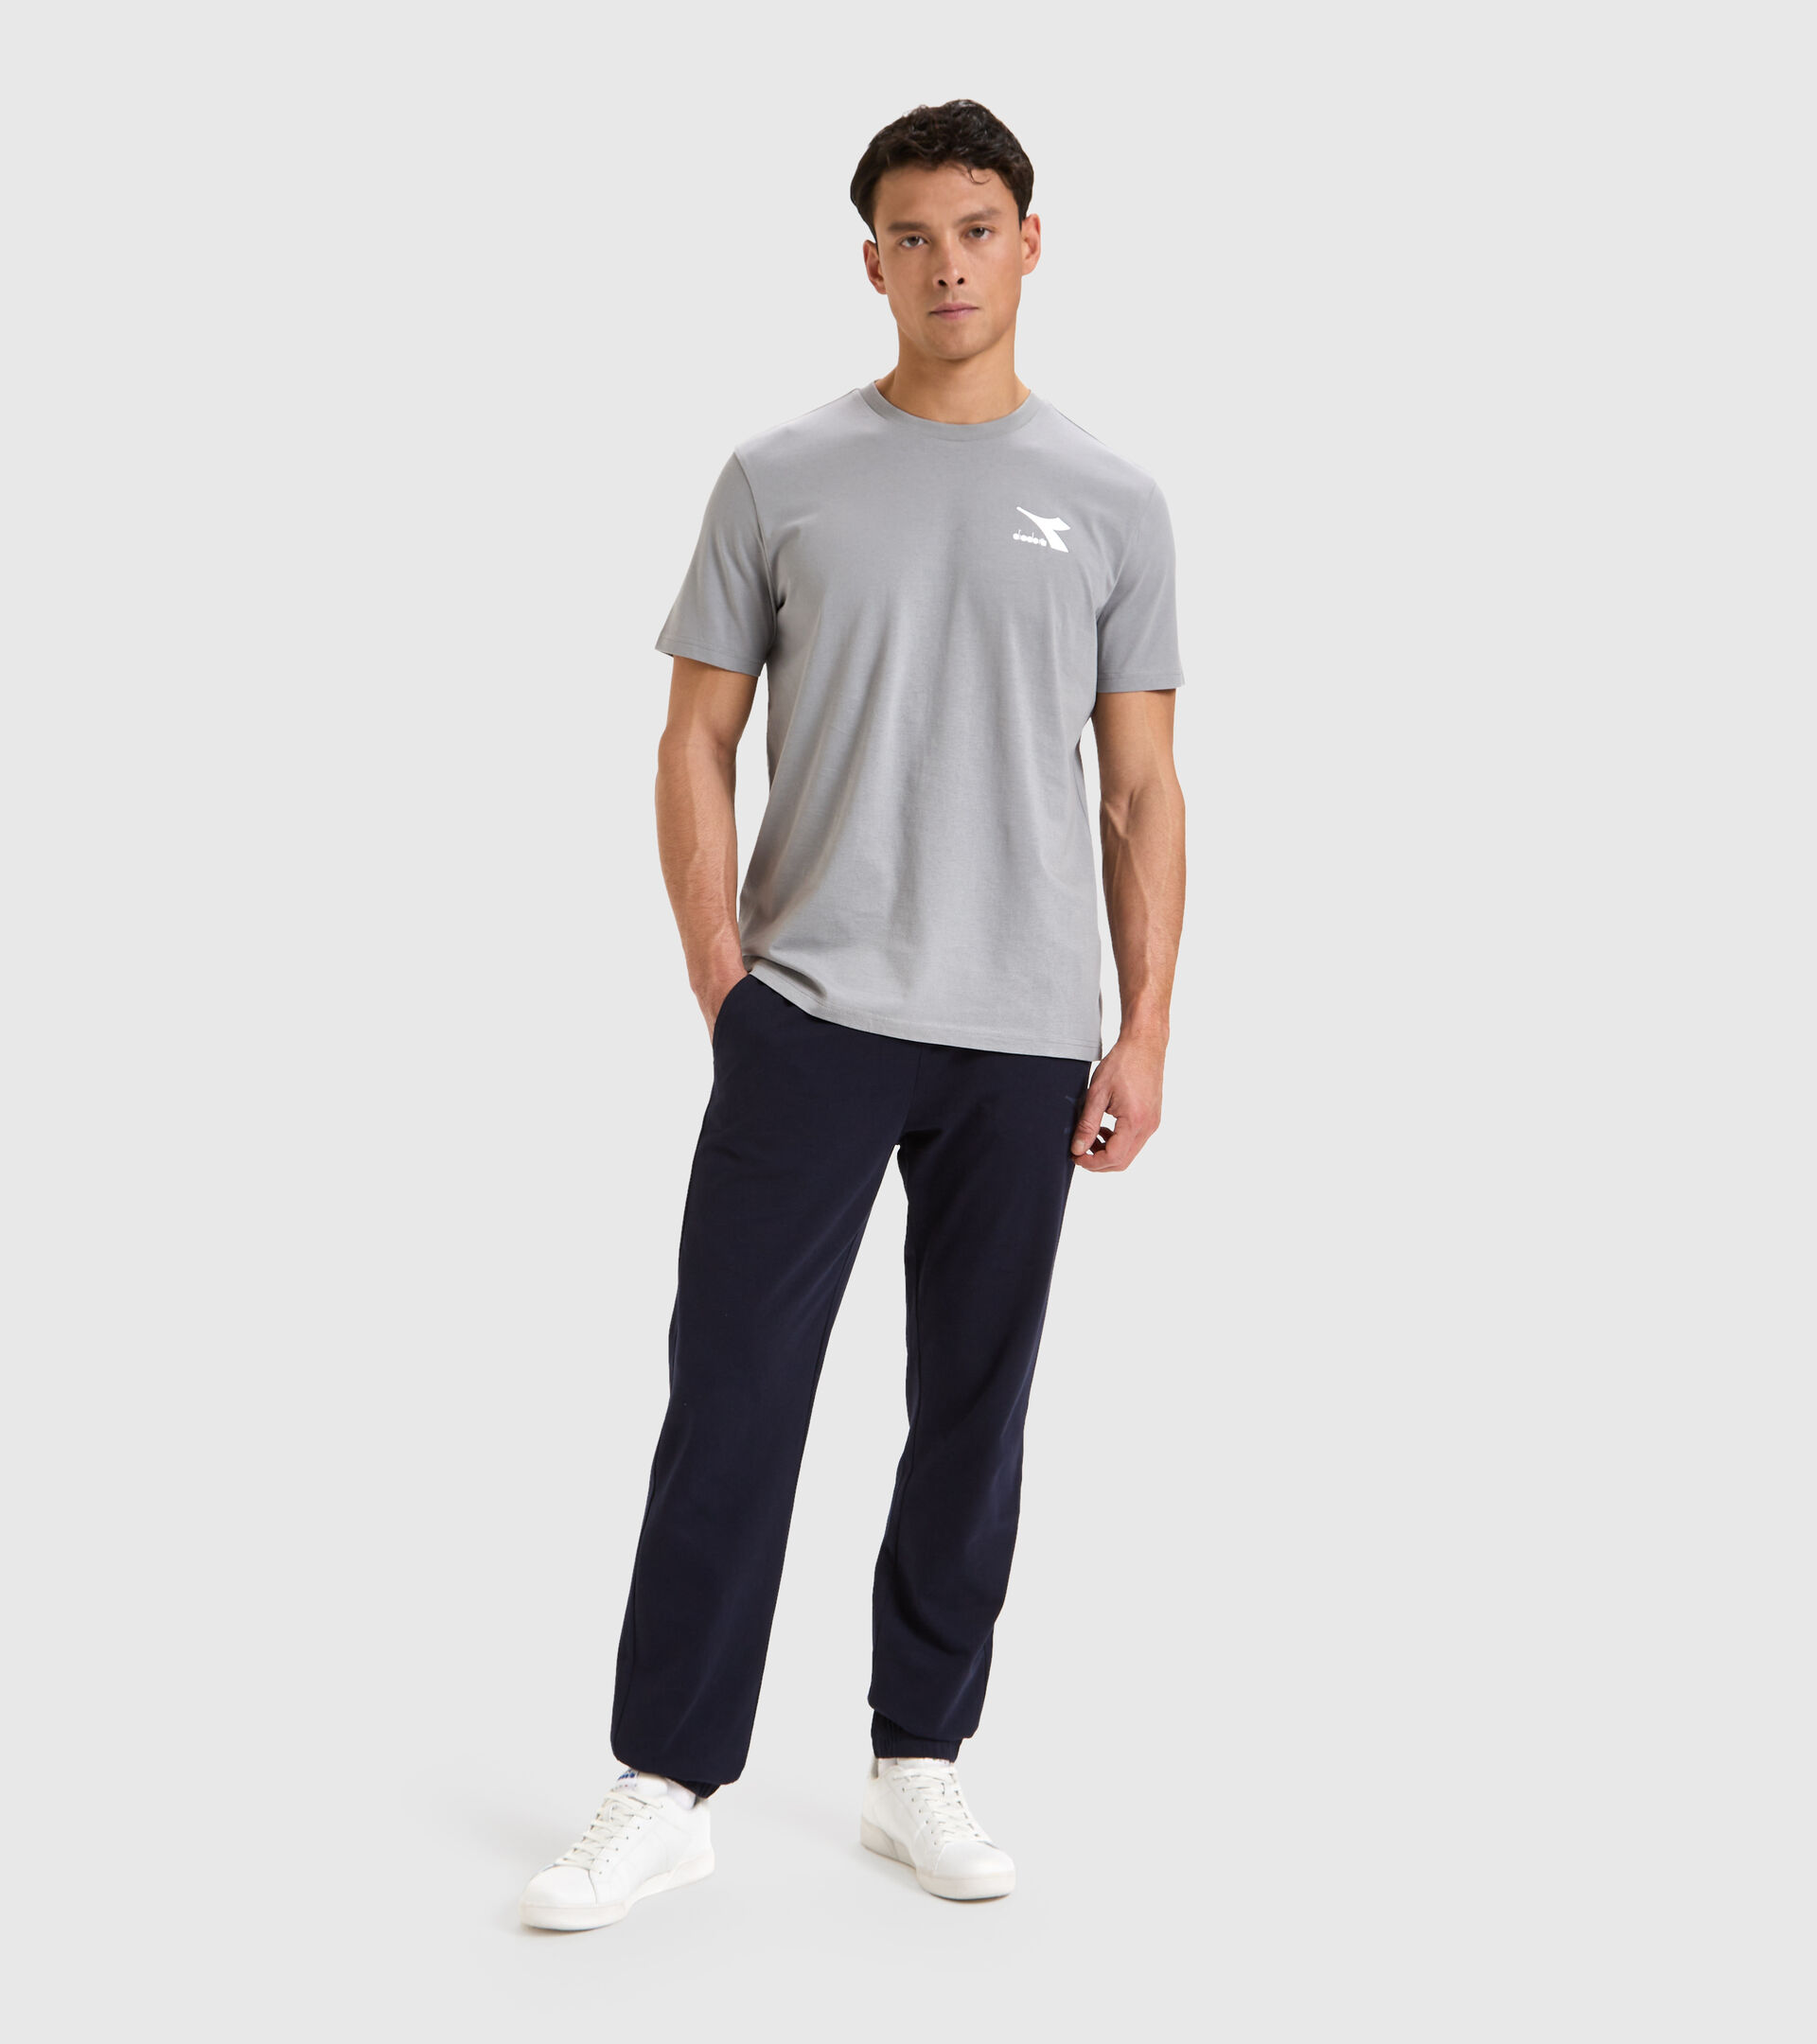 Camiseta de algodón - Hombre T-SHIRT SS CORE GRIFO - Diadora